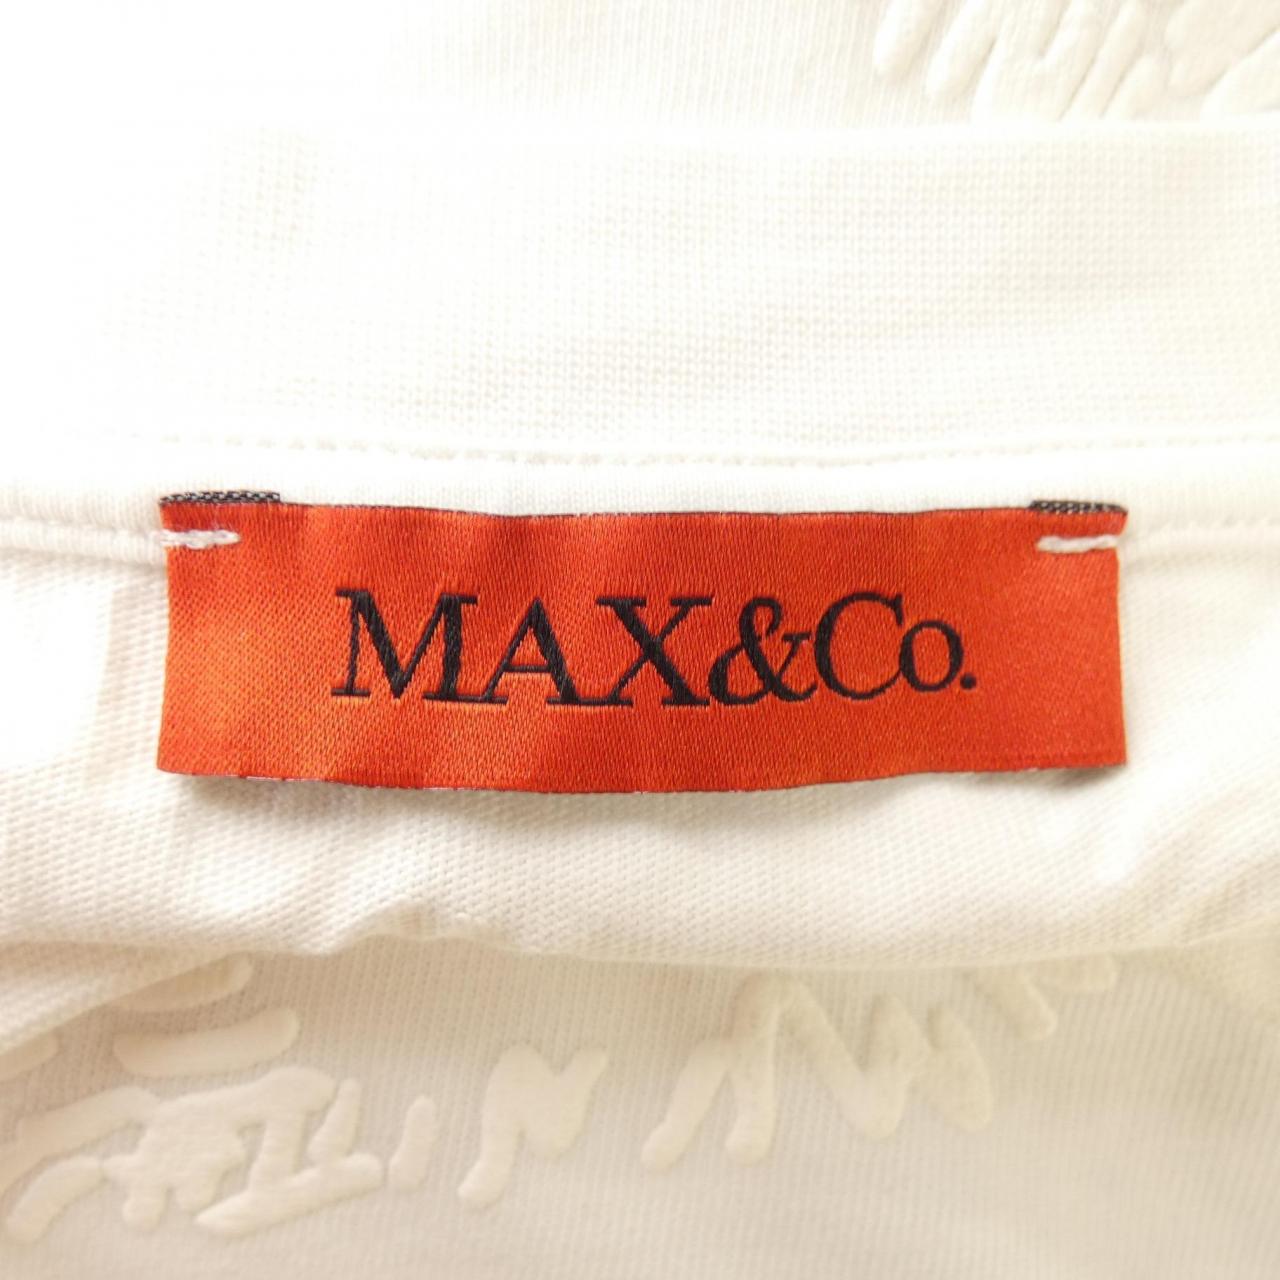 マックスアンドコー Max & Co Tシャツ